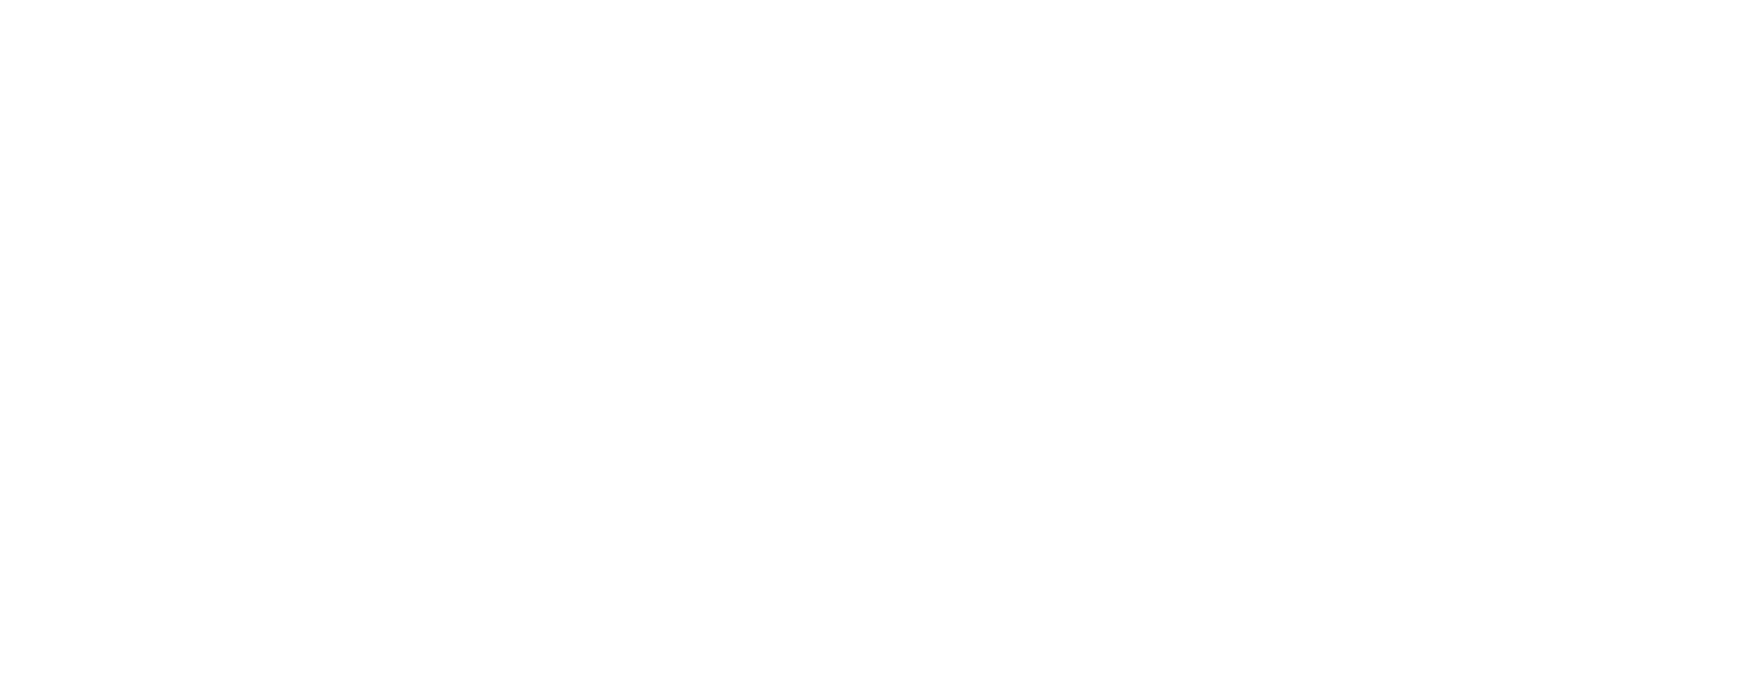 Ingenuity Brands logo